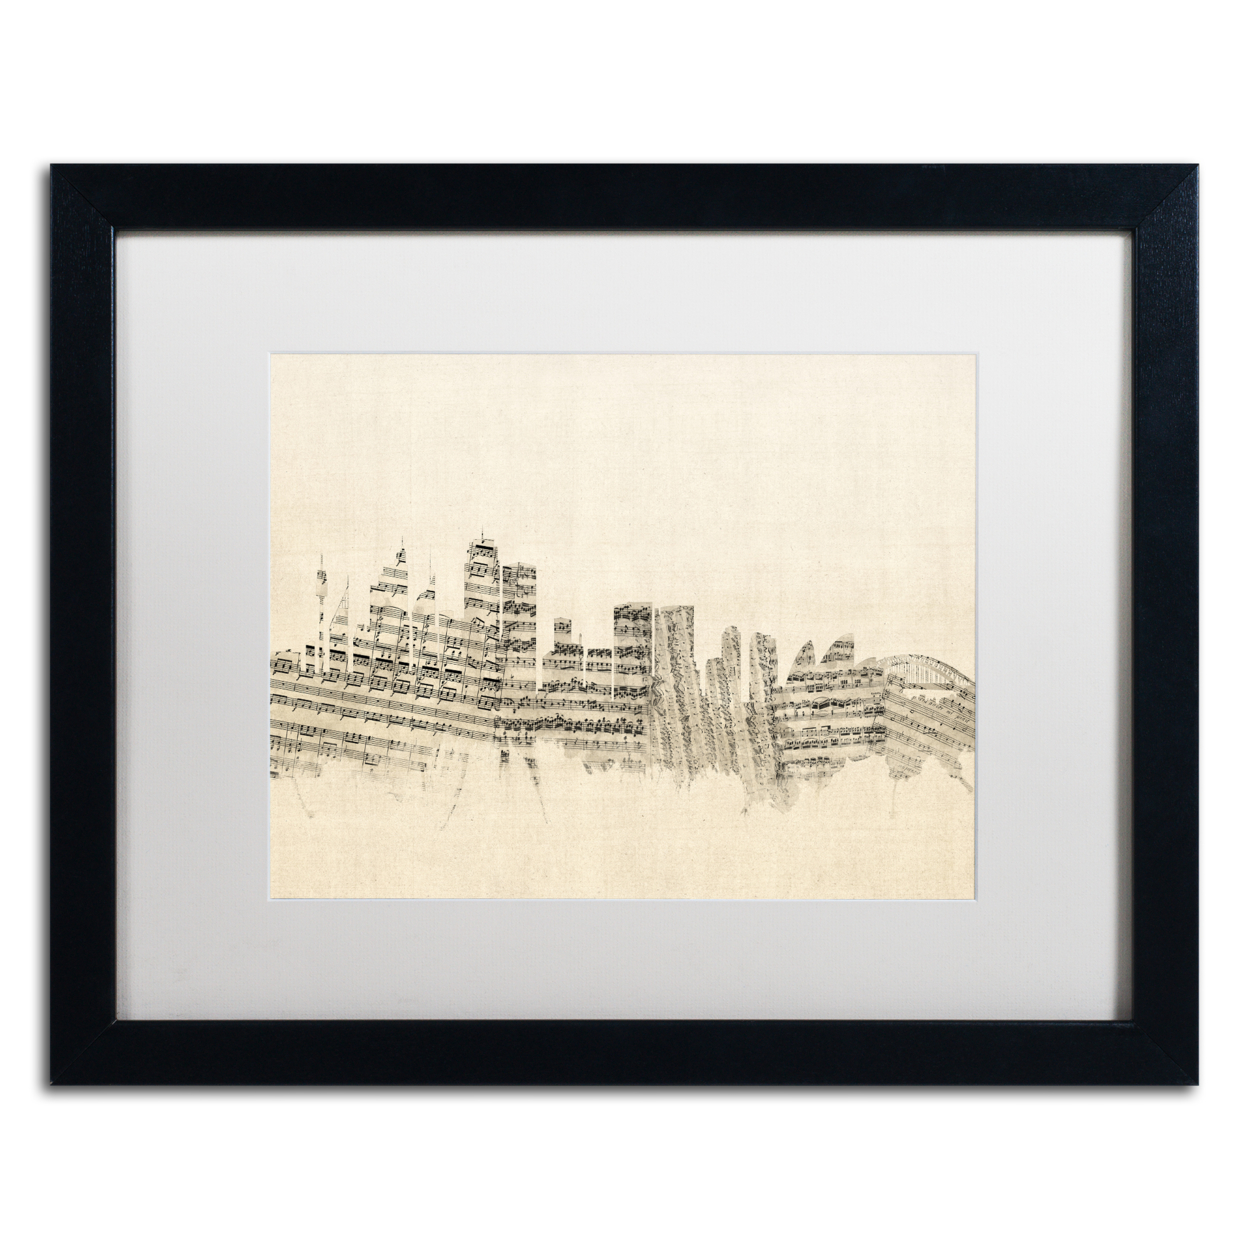 Michael Tompsett 'Sydney Skyline Sheet Music' Black Wooden Framed Art 18 X 22 Inches